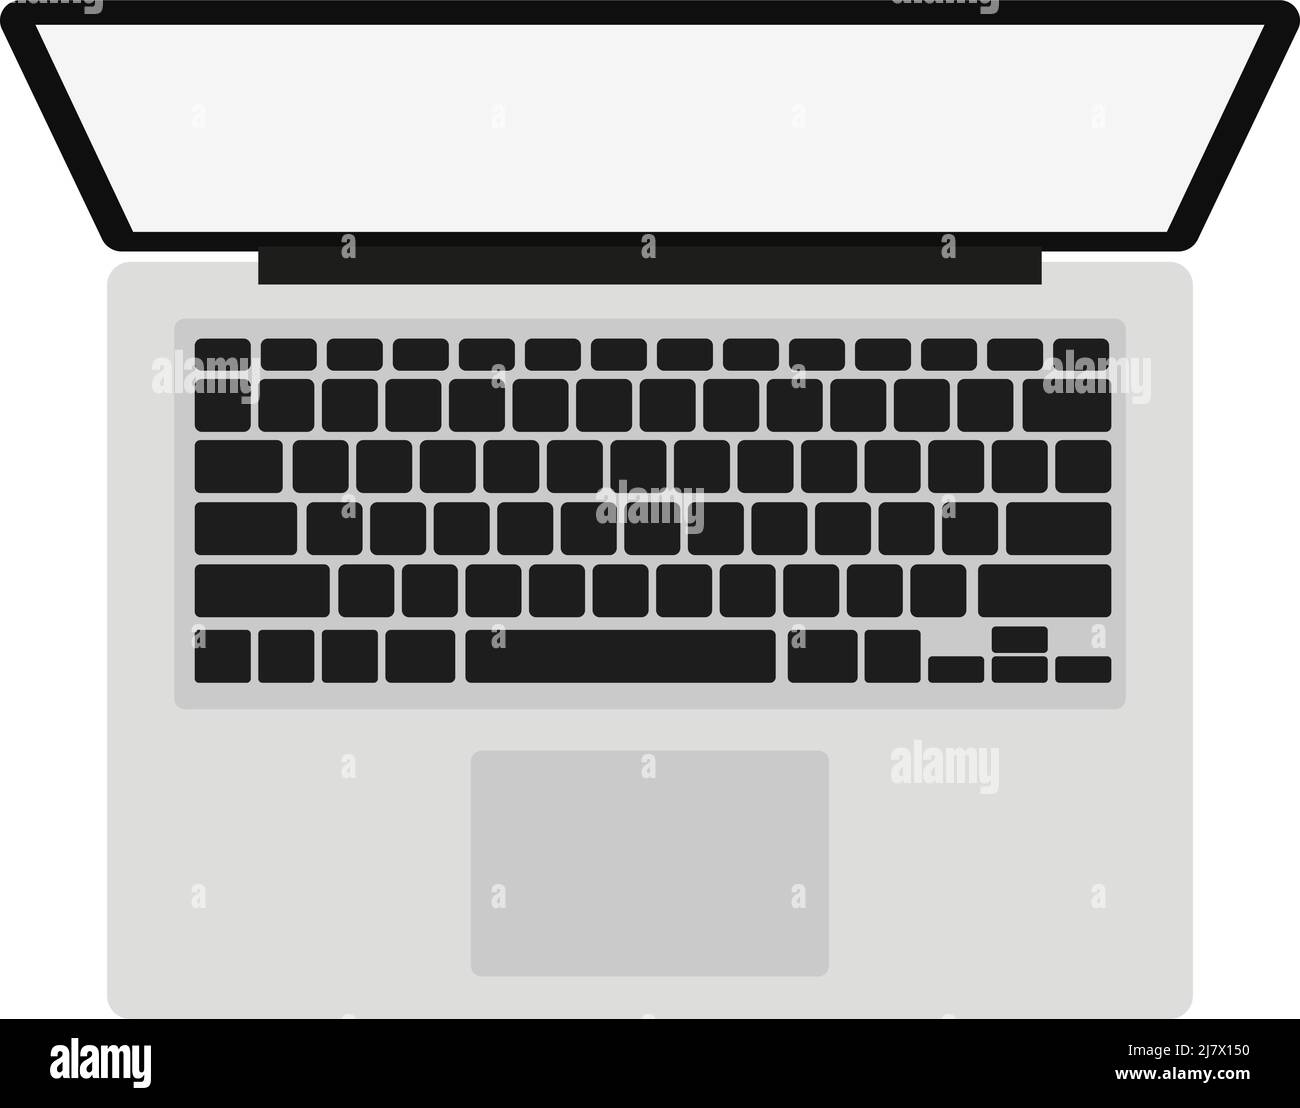 vue de haut en bas de l'ordinateur portable sur fond blanc, illustration vectorielle plate Illustration de Vecteur